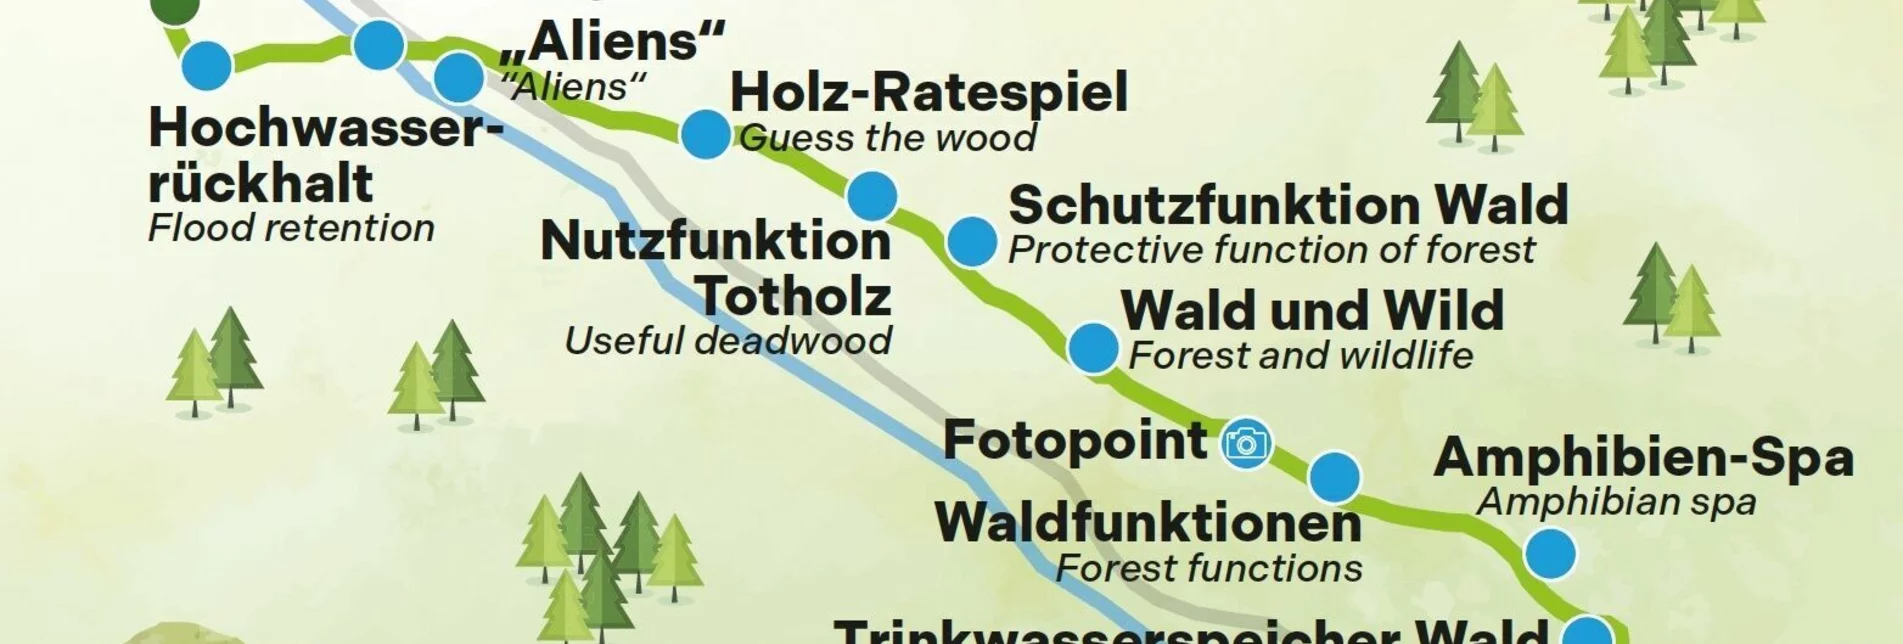 Wanderung Themenweg Augstbach - Touren-Impression #1 | © Gemeinde Altaussee